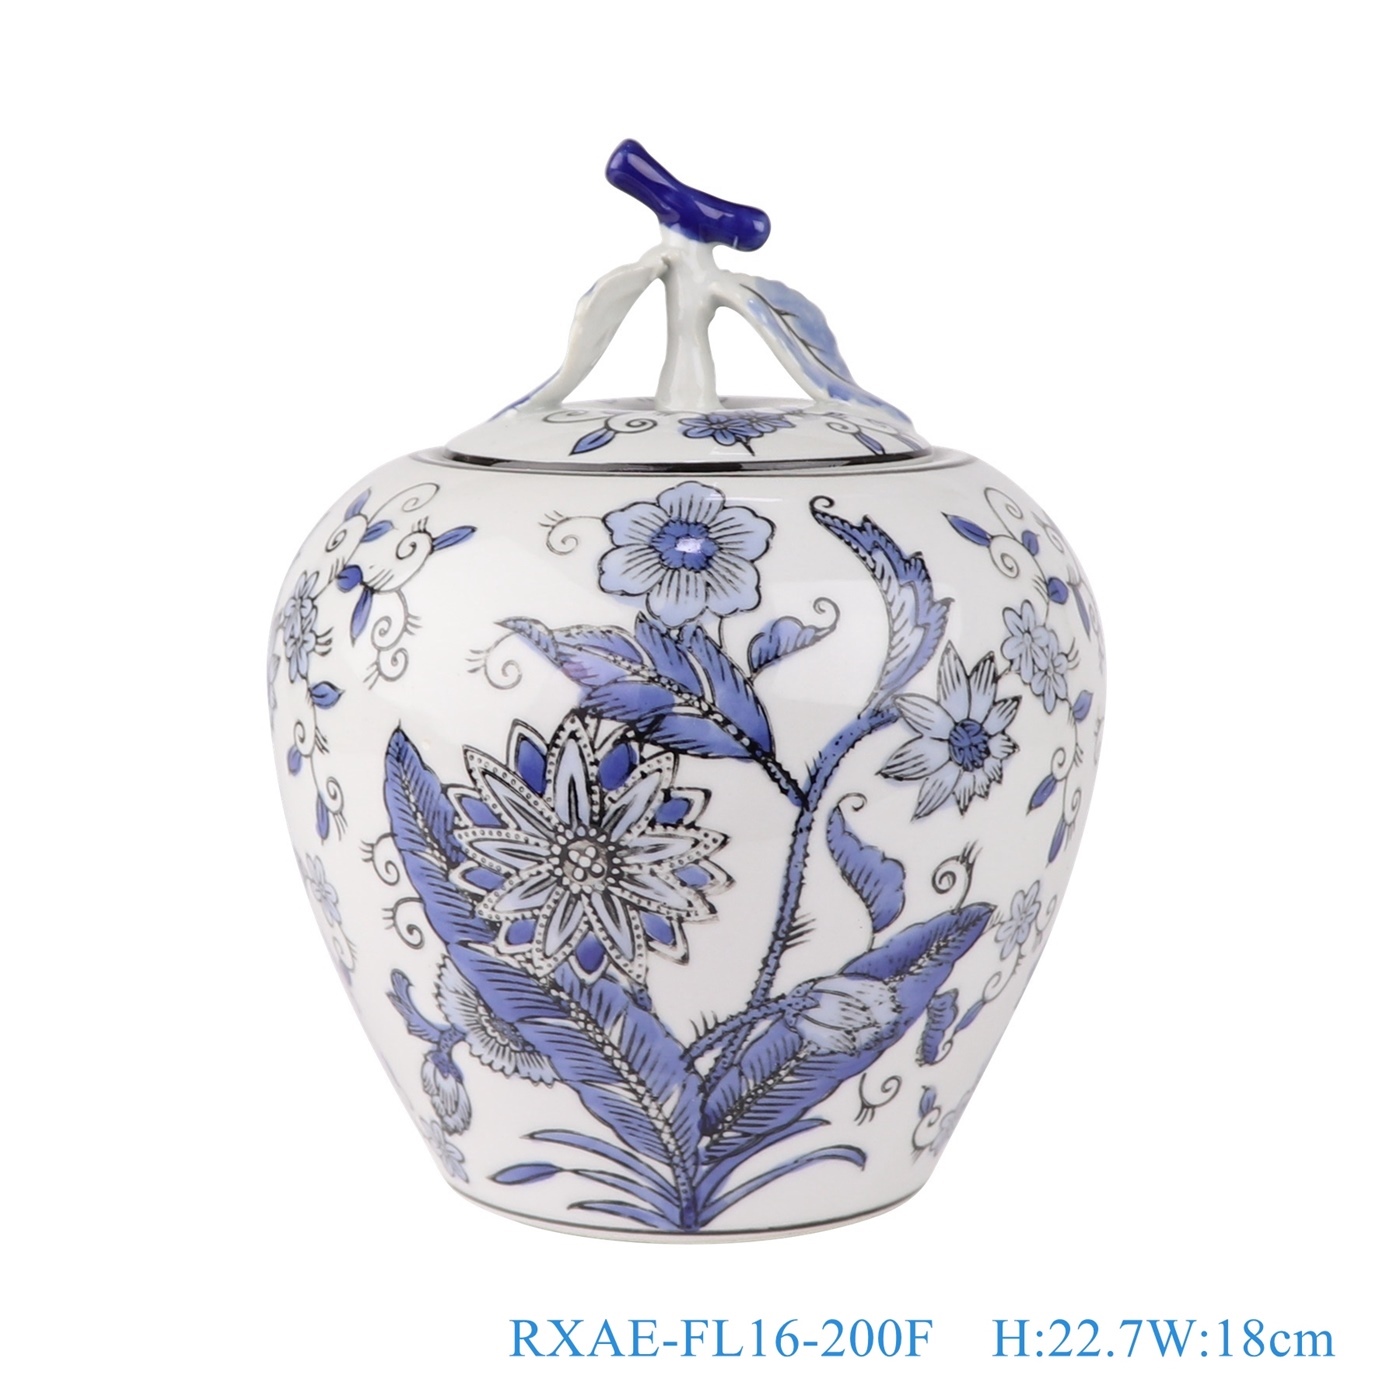 青花花卉苹果罐，产品编号：RXAE-FL16-200F       产品尺寸(单位cm):  高22.7直径18口径20.5底径10.8重量1.25KG